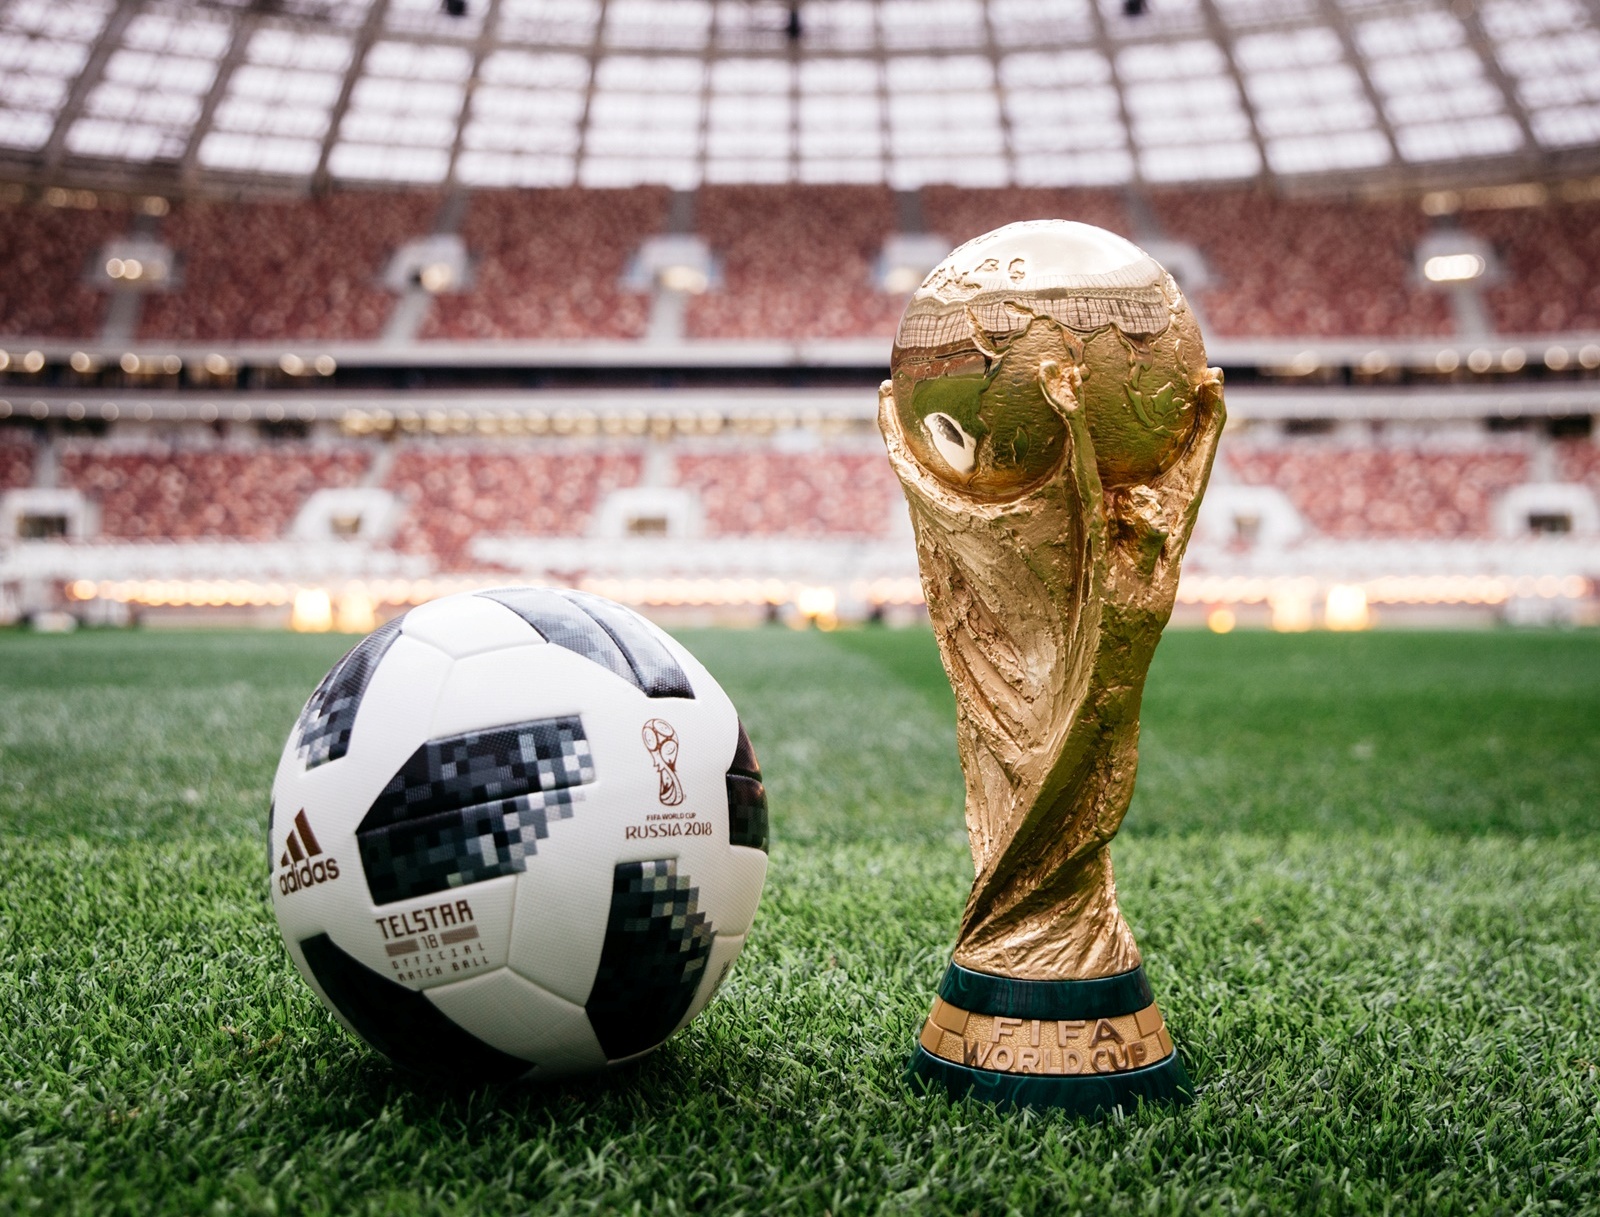 adidas Fotball lansează mingea oficială pentru Campionatul Mondial FIFA 2018